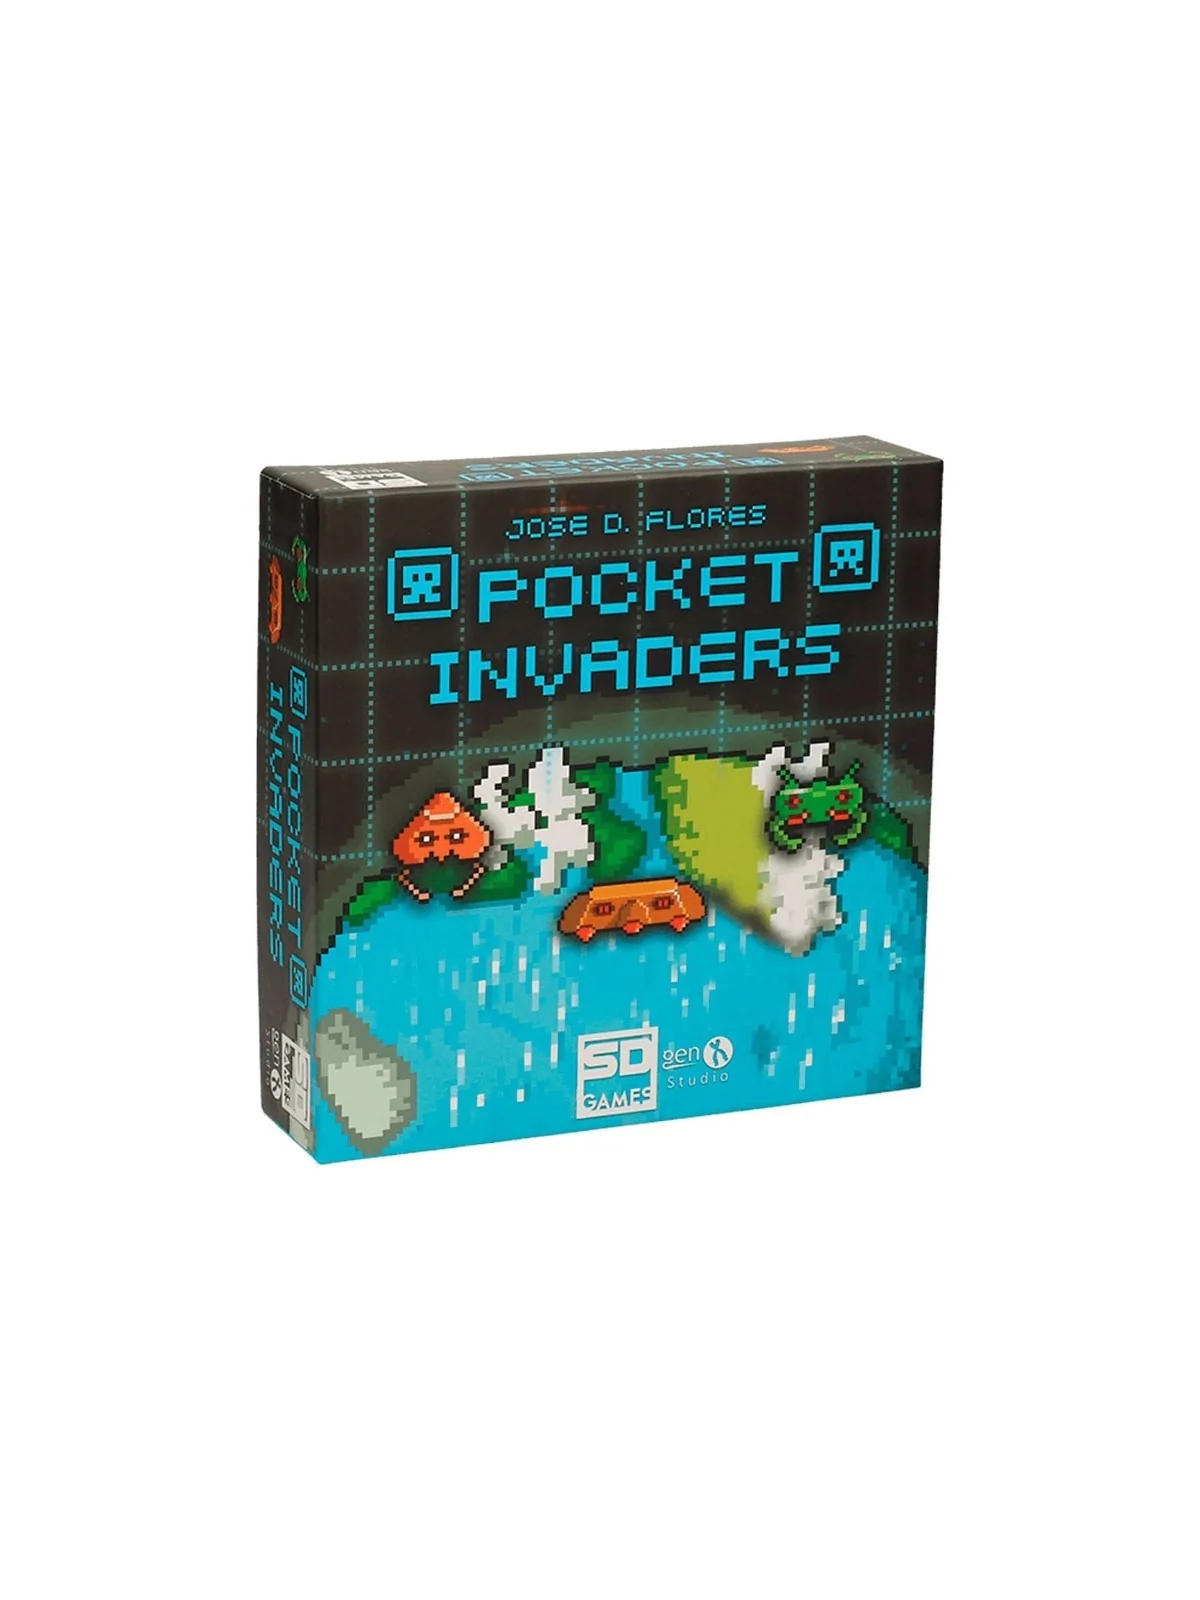 Comprar Pocket Invaders barato al mejor precio 17,96 € de SD GAMES